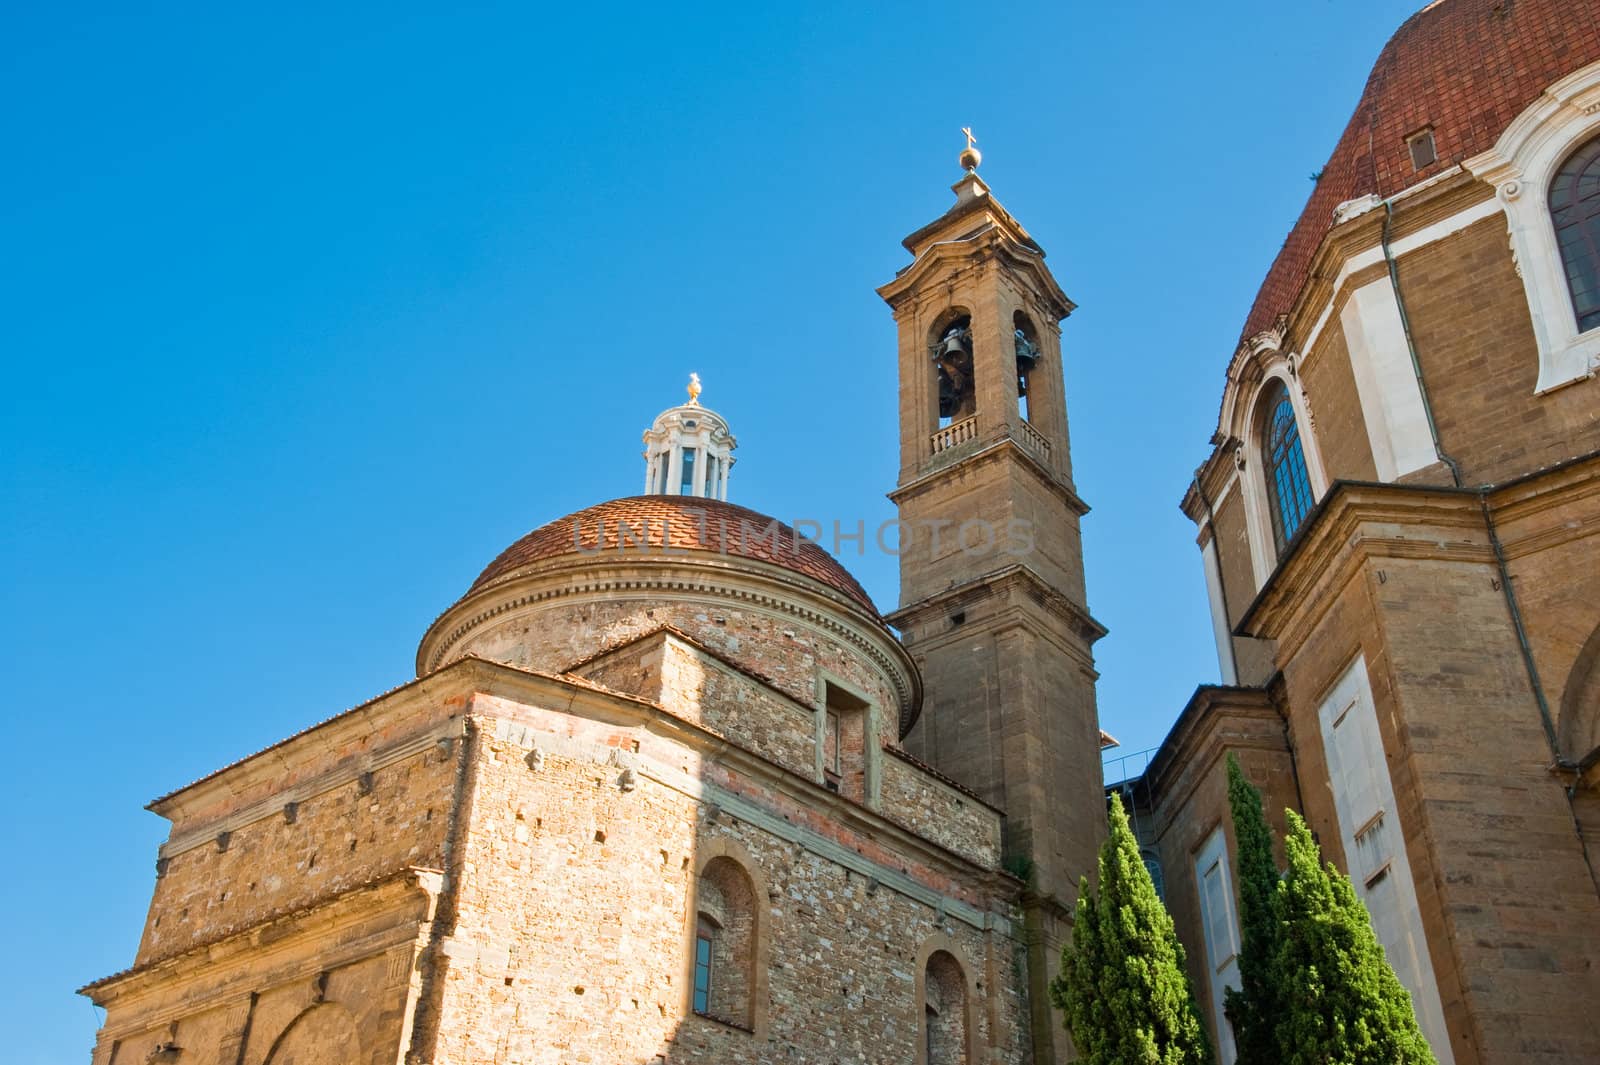 Basilica di San Lorenzo in Florence, Italy